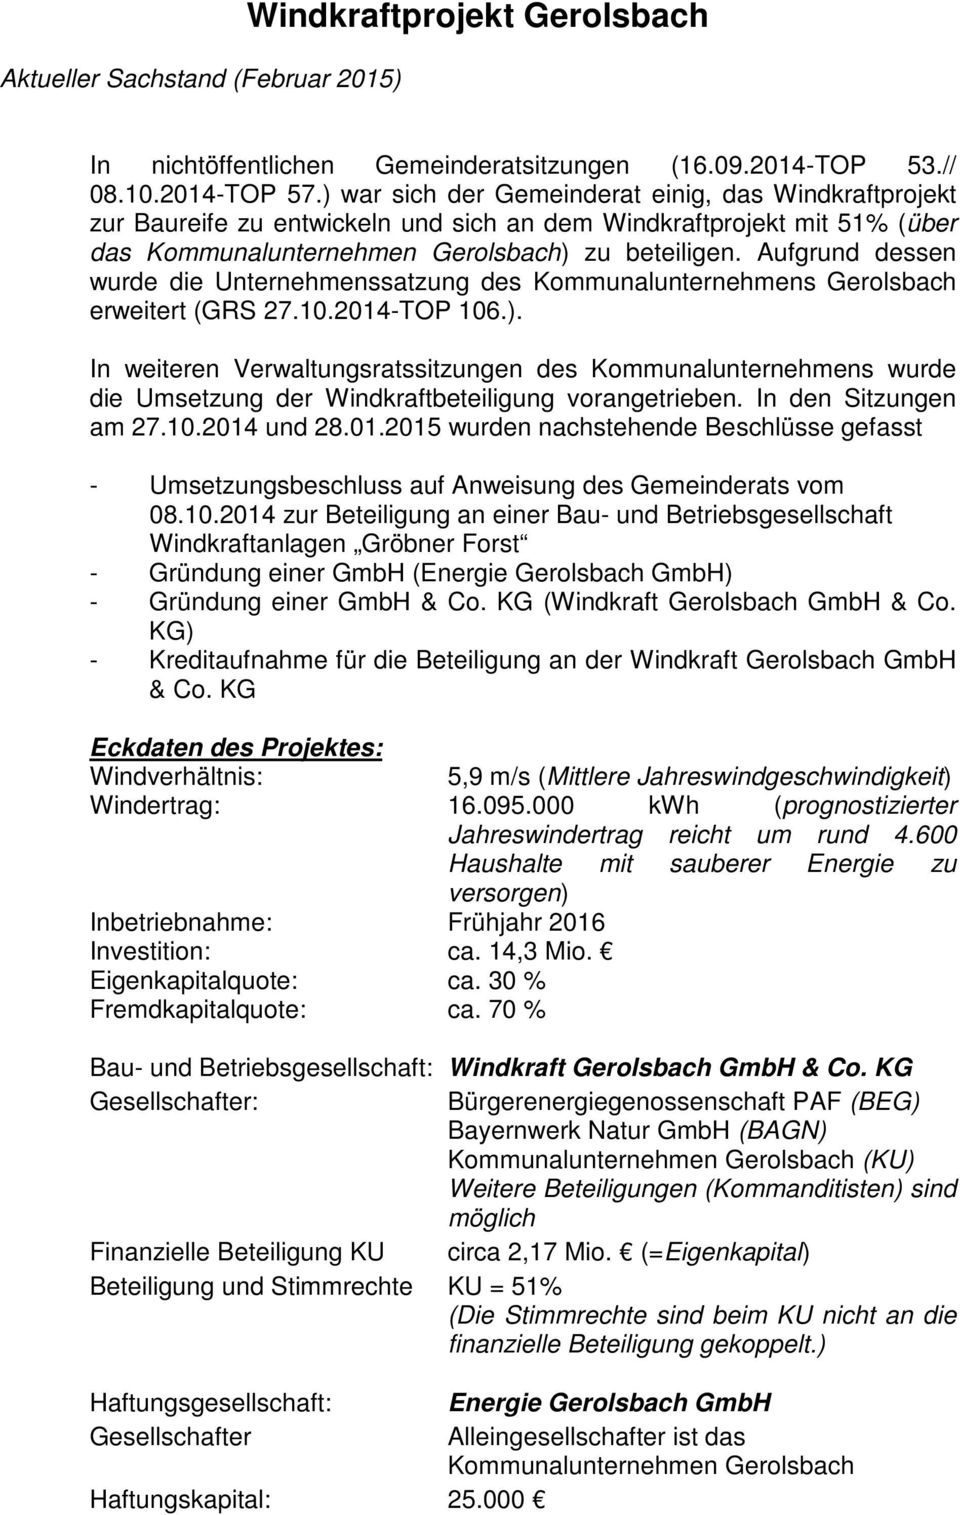 Aufgrund dessen wurde die Unternehmenssatzung des Kommunalunternehmens Gerolsbach erweitert (GRS 27.10.2014-TOP 106.).